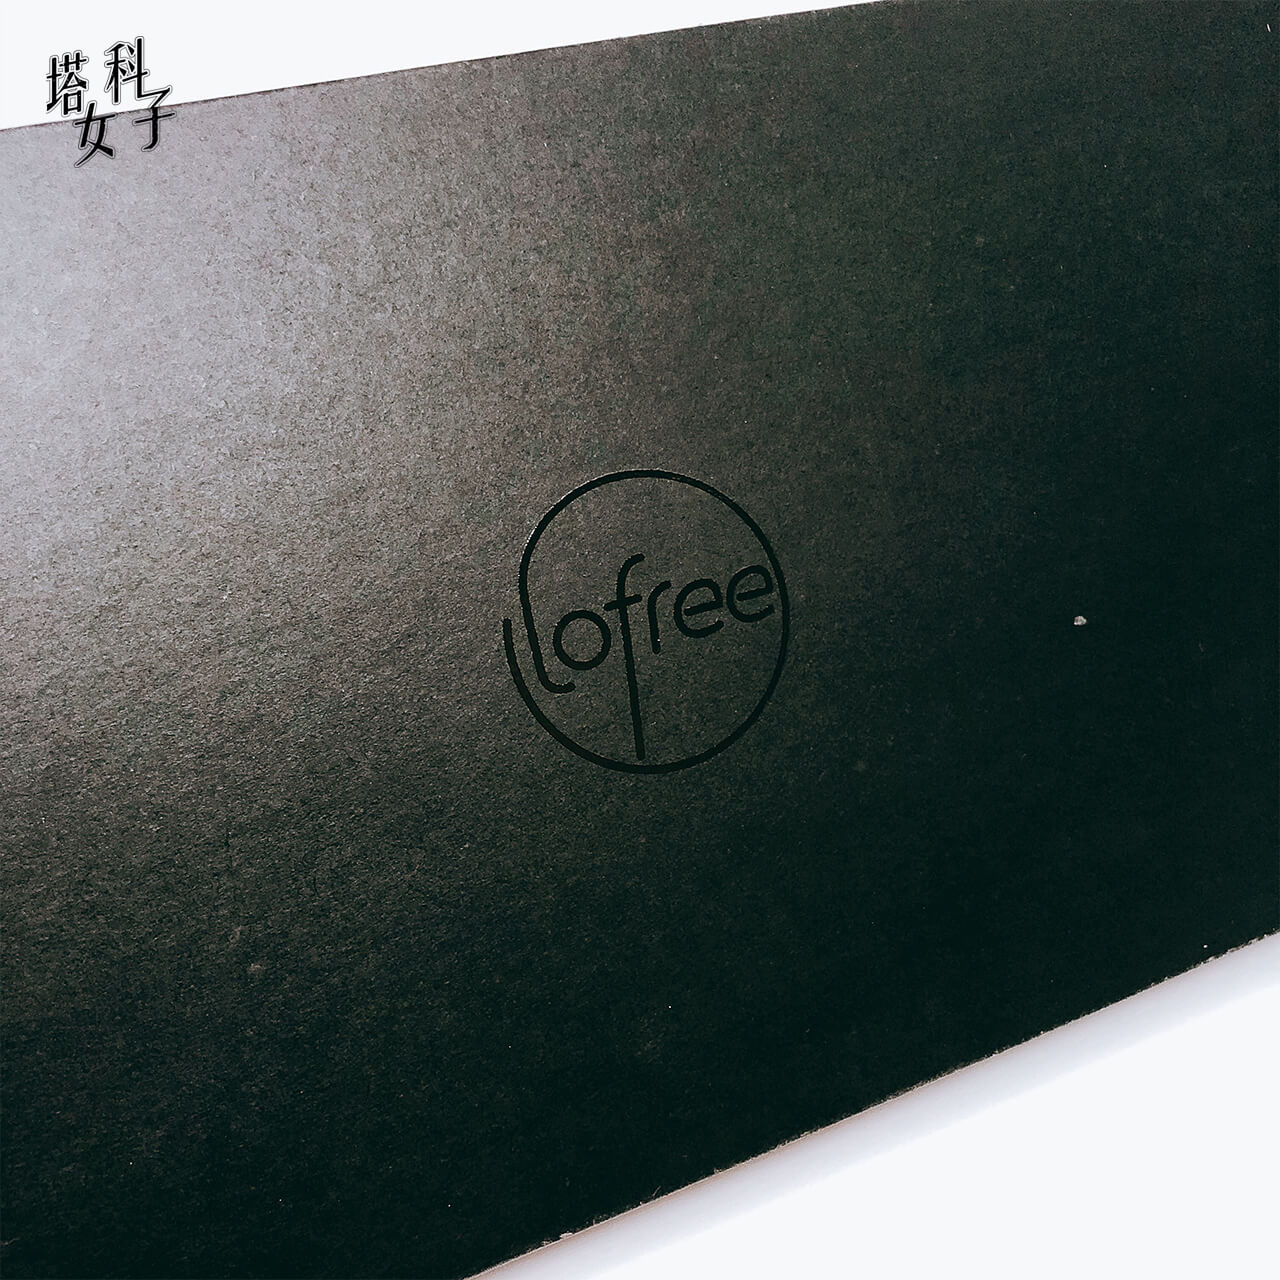 打字機鍵盤 Lofree - 外包裝